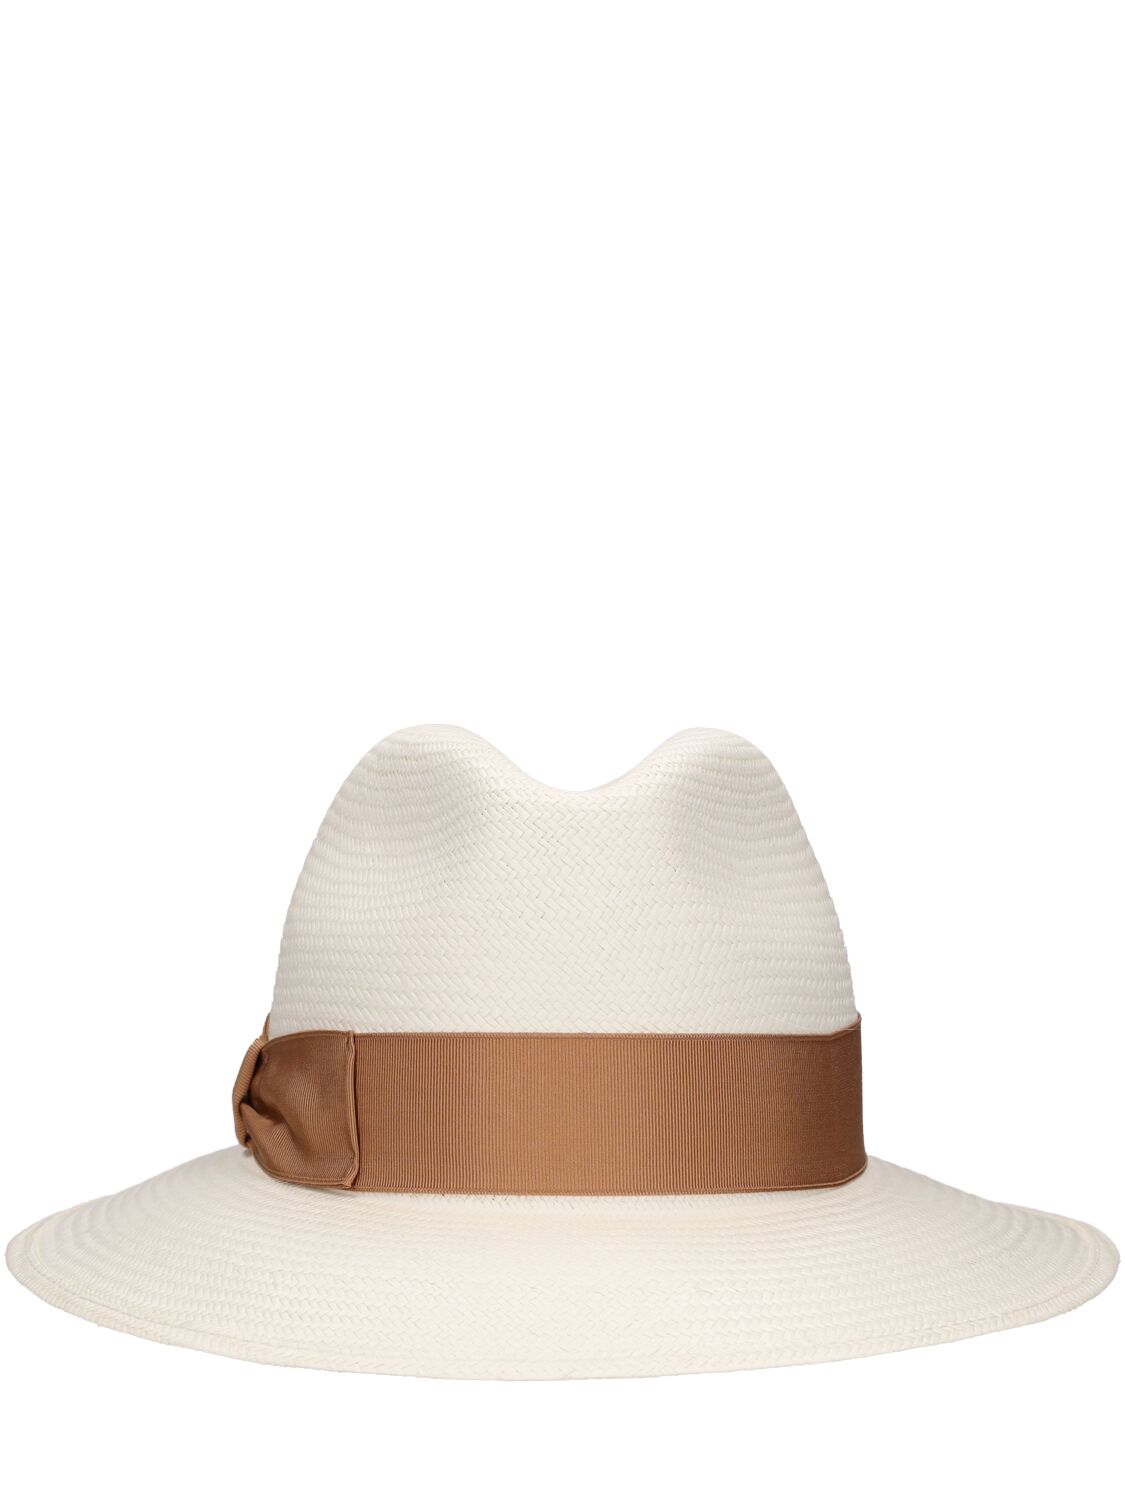 Borsalino Giulietta Fine Panama Hat In Wh,calcedonio